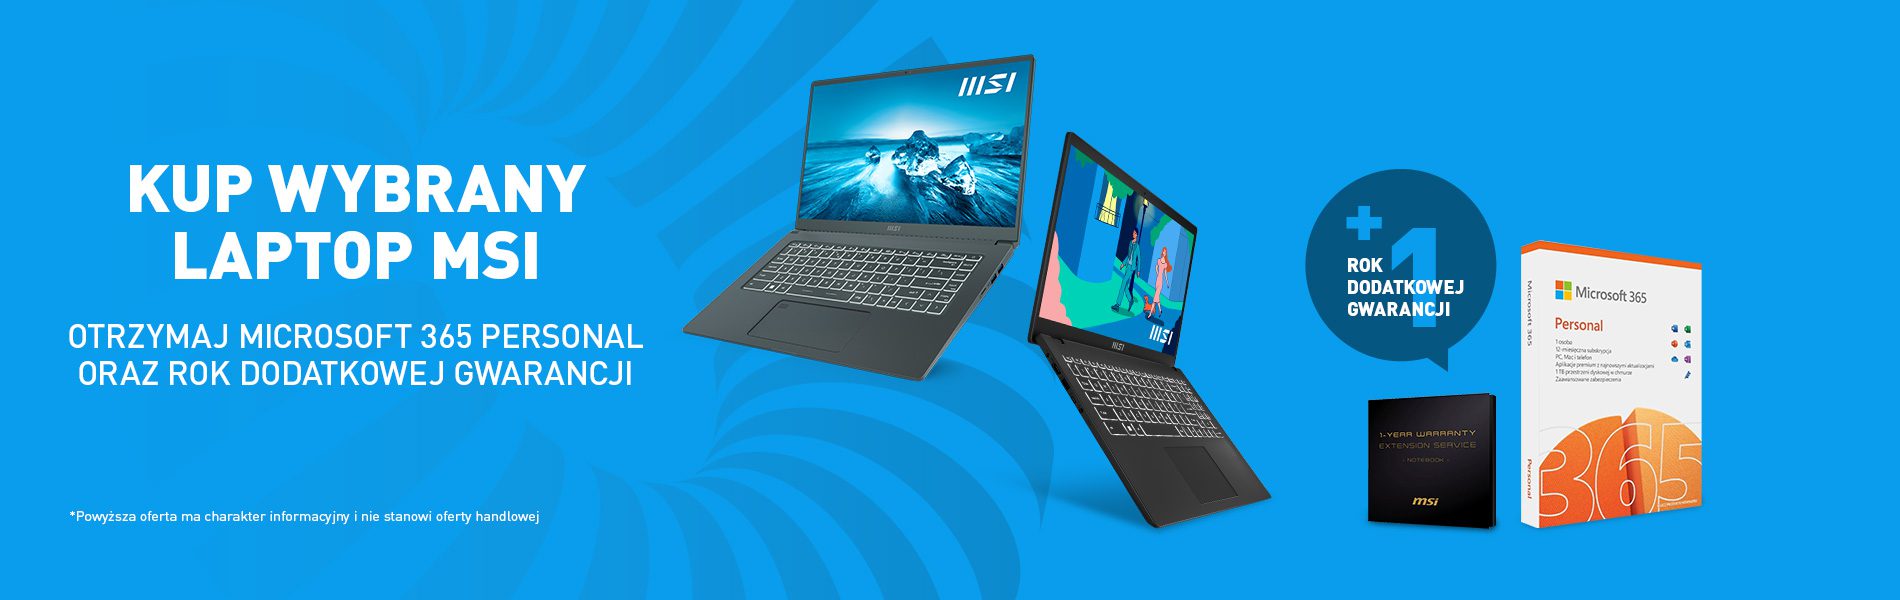 Kup wybrany laptop MSI i otrzymaj Microsoft 365 Personal oraz rok dodatkowej gwarancji.